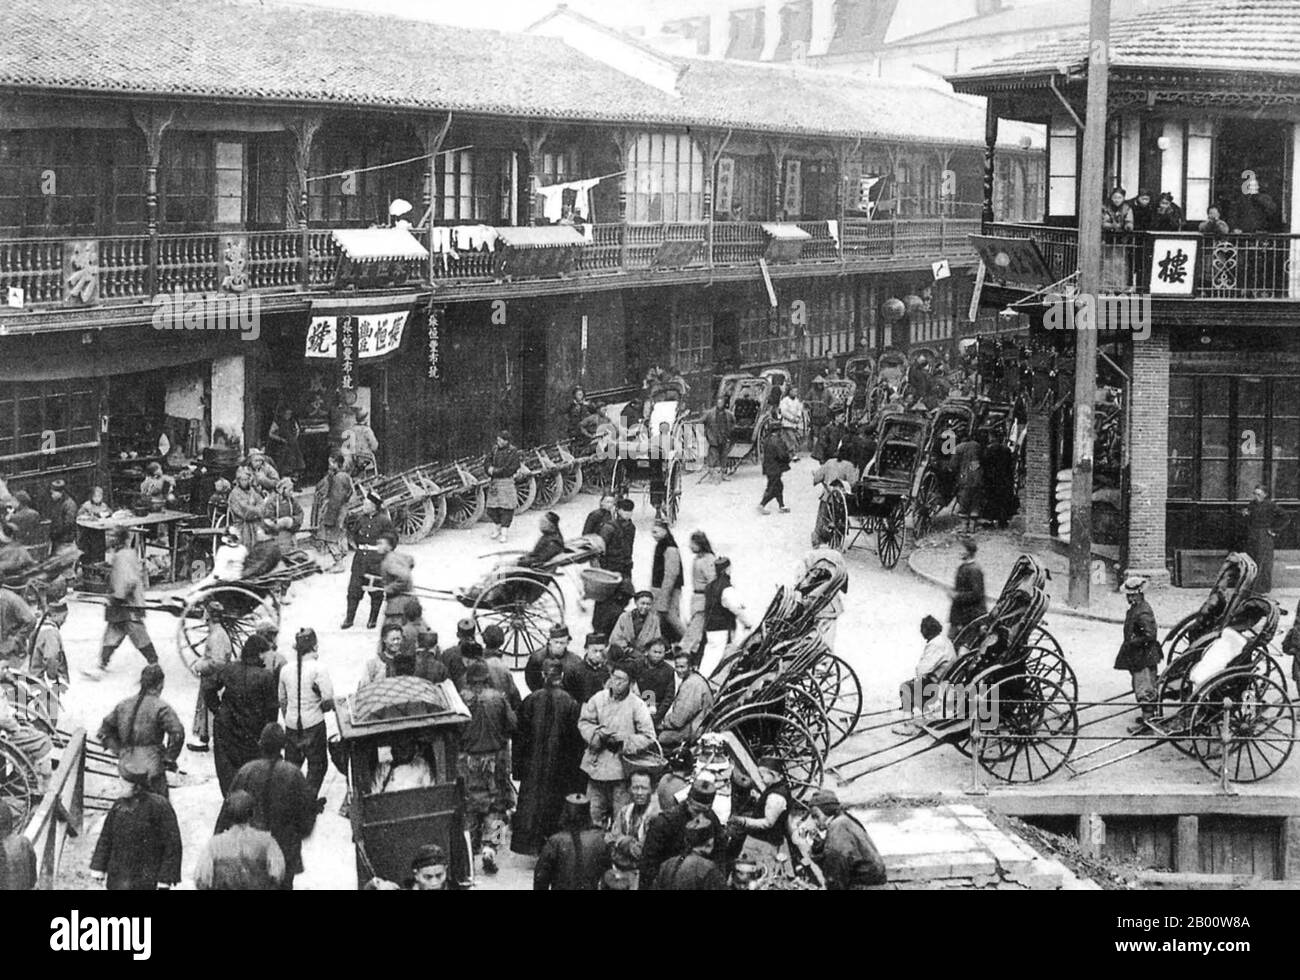 Chine : rickshaws à la vieille ville de Shanghai, zone de la porte nord, c. 1911. L'attention internationale à Shanghai s'est accrue au XIXe siècle en raison de son potentiel économique et commercial sur le fleuve Yangtze. Pendant la première Guerre de l'opium (1839-1842), les forces britanniques détenaient temporairement la ville. La guerre s'est terminée par le Traité de Nanjing de 1842, ouvrant Shanghai et d'autres ports au commerce international. En 1863, la colonie britannique, située au sud de Suzhou creek (district de Huangpu), et la colonie américaine, au nord de Suzhou creek (district de Hongkou), se sont jointes pour former la colonie internationale. Banque D'Images